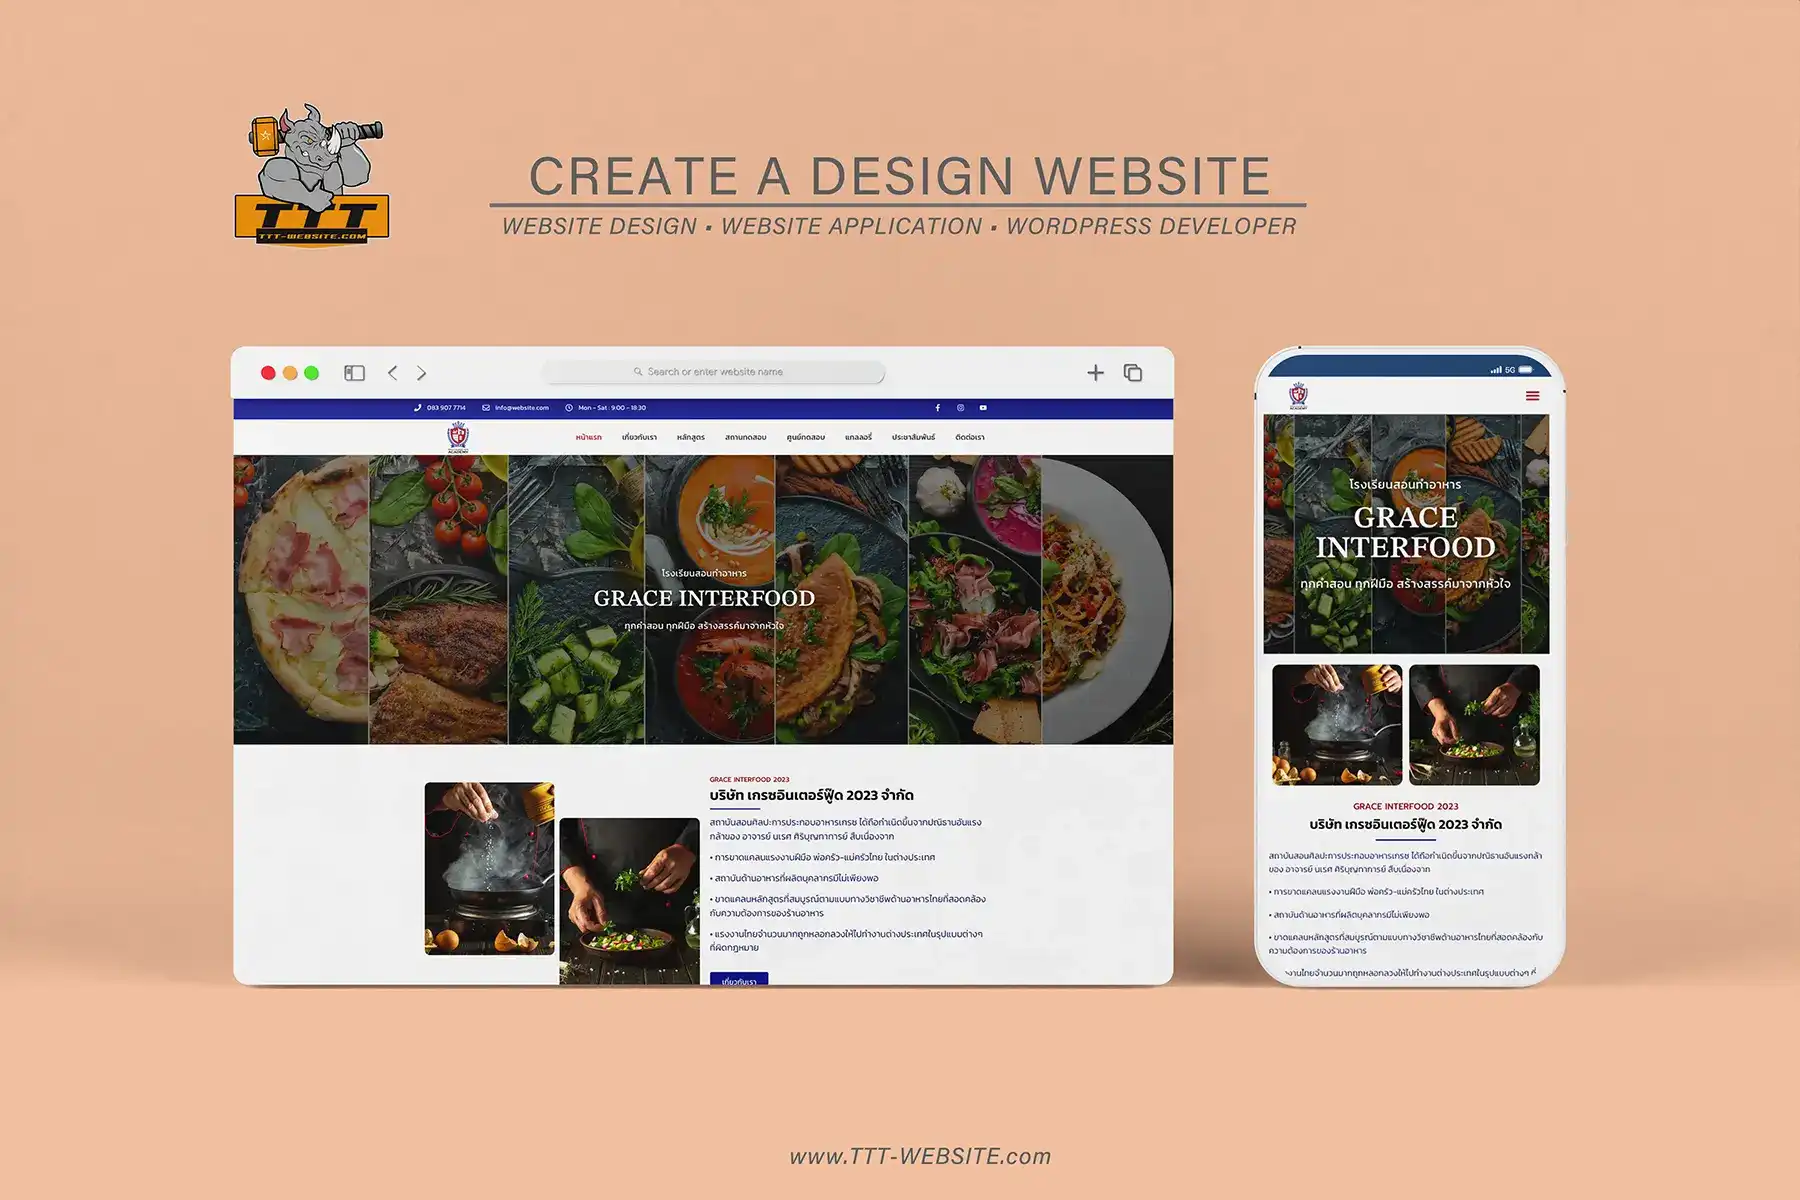 รับทำเว็บไซต์ รับออกแบบเว็บไซต์ เว็บไซต์สำเร็จรูป ตัวอย่างเว็บไซต์ - โรงเรียนสอนทำอาหาร TTT-WEBSITE